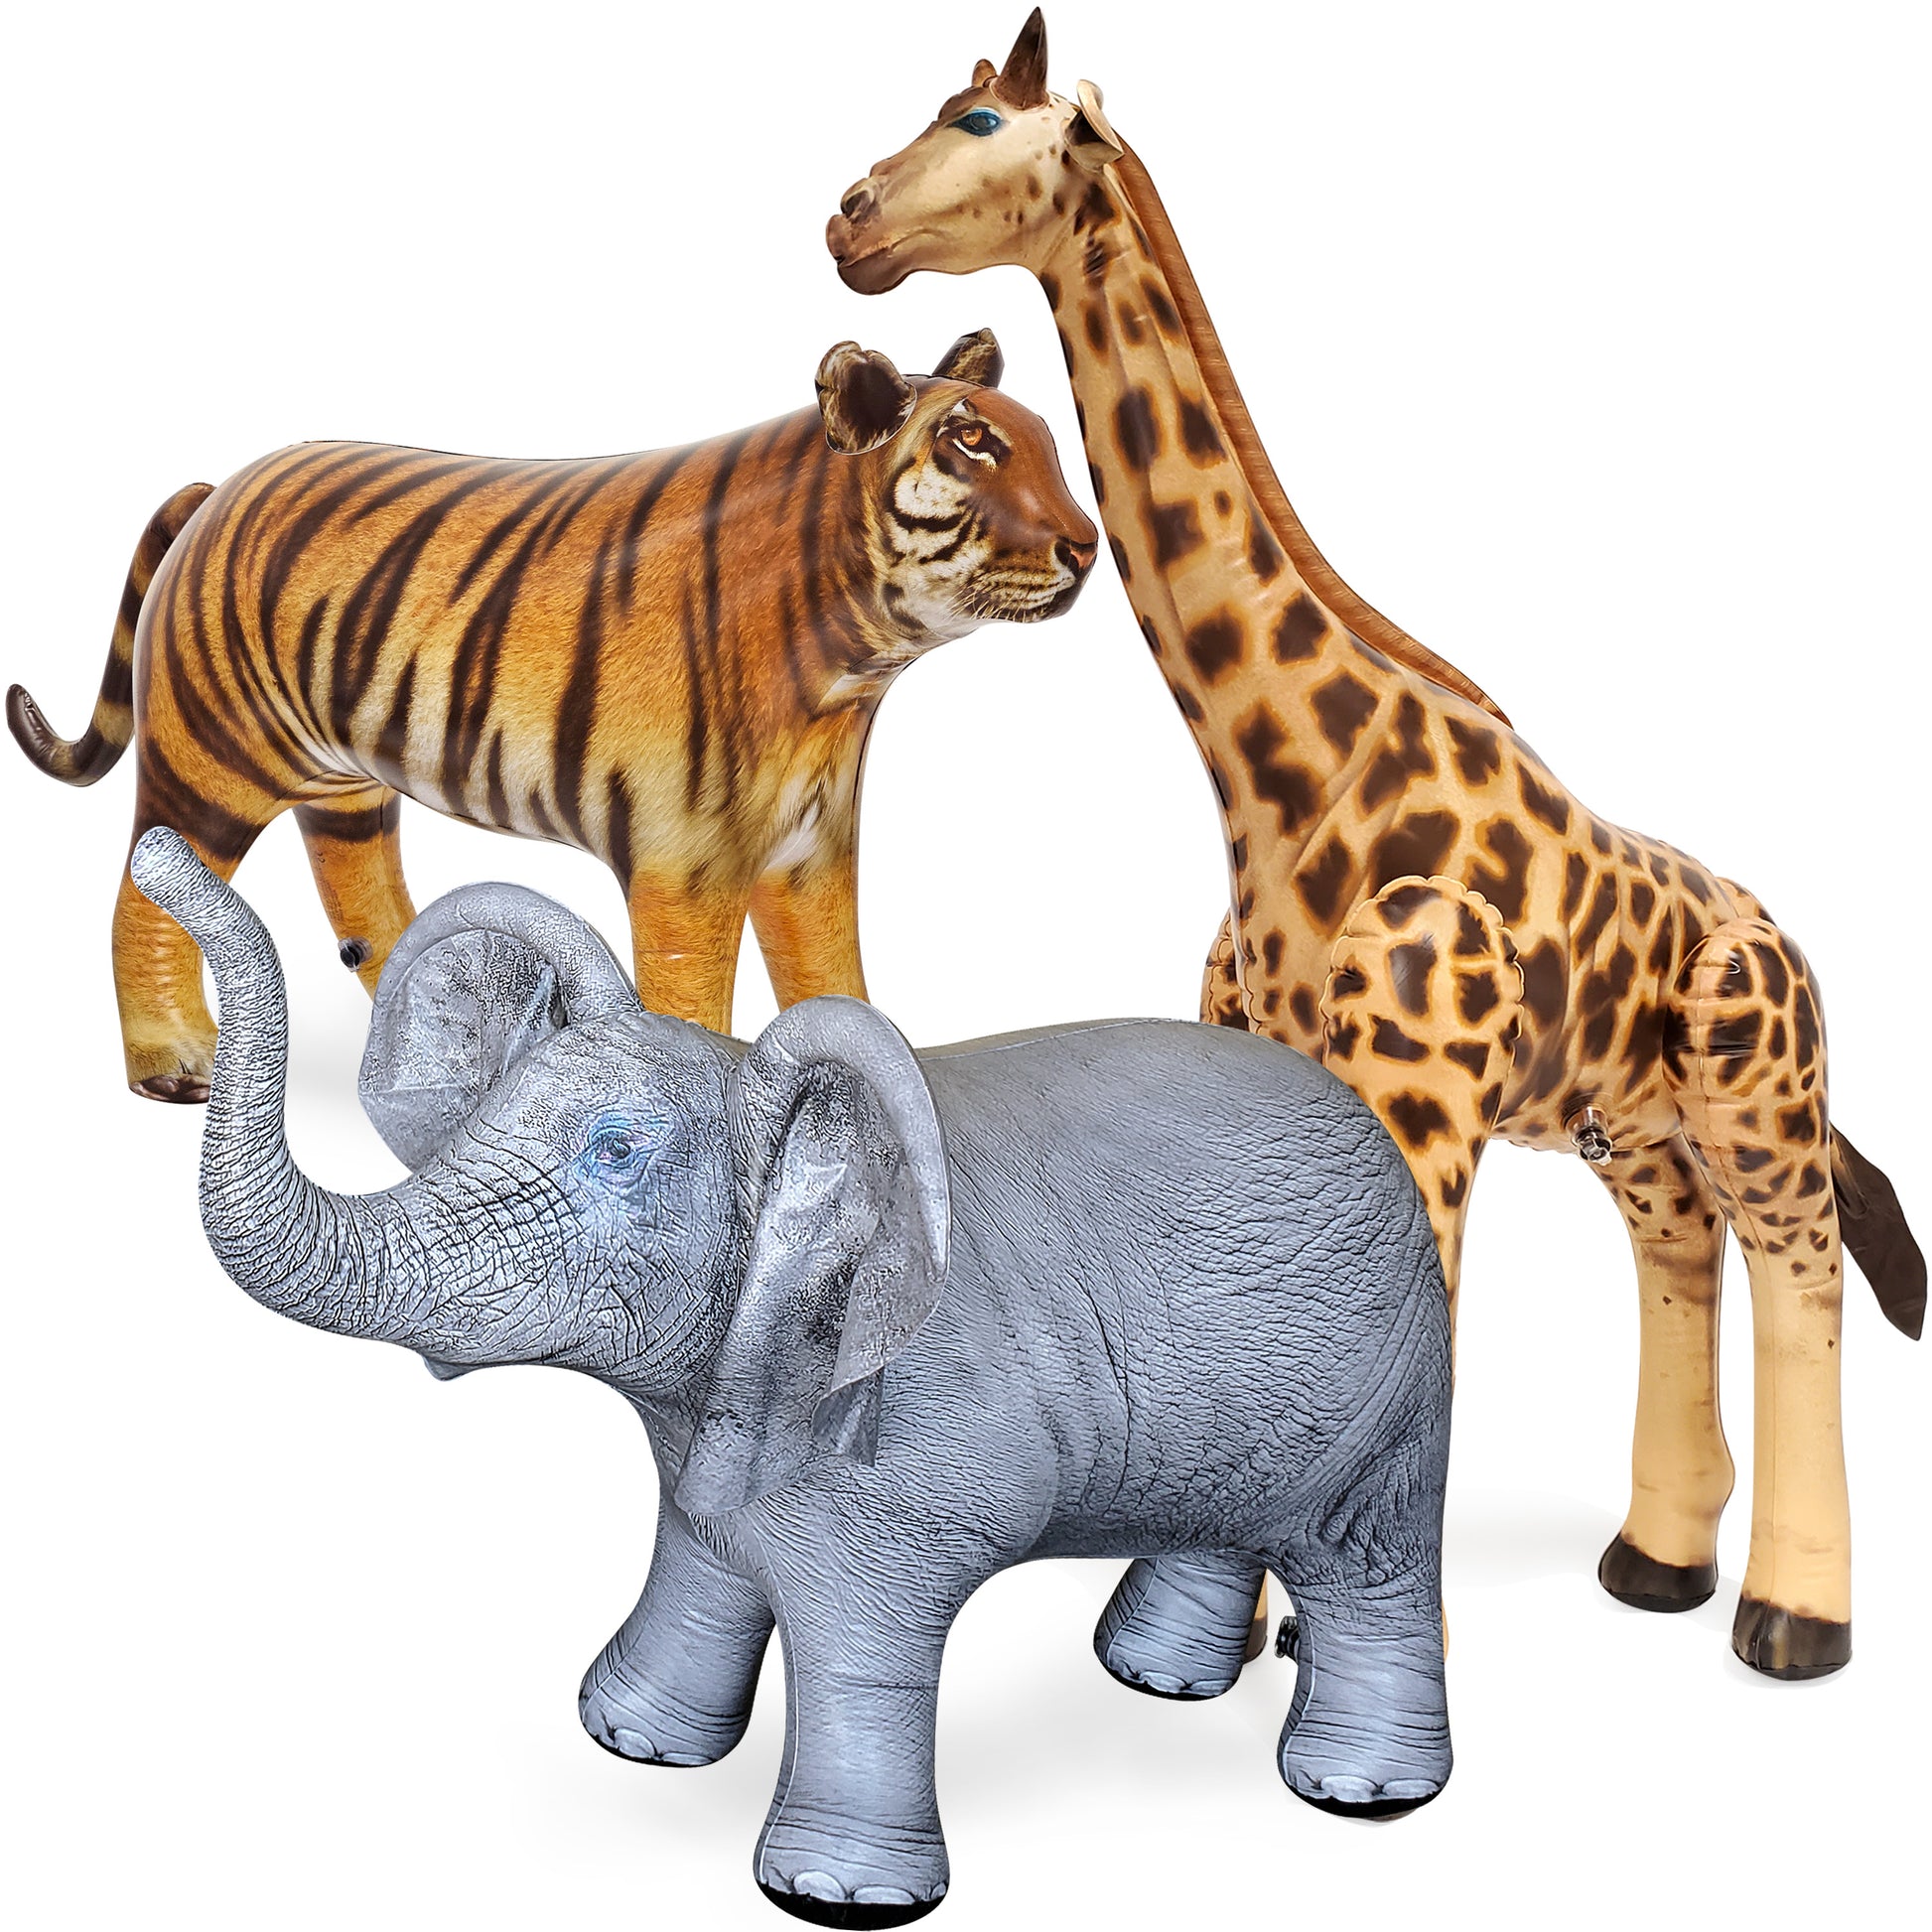 JC-GET3 - Giraffe, Elephant, Tiger